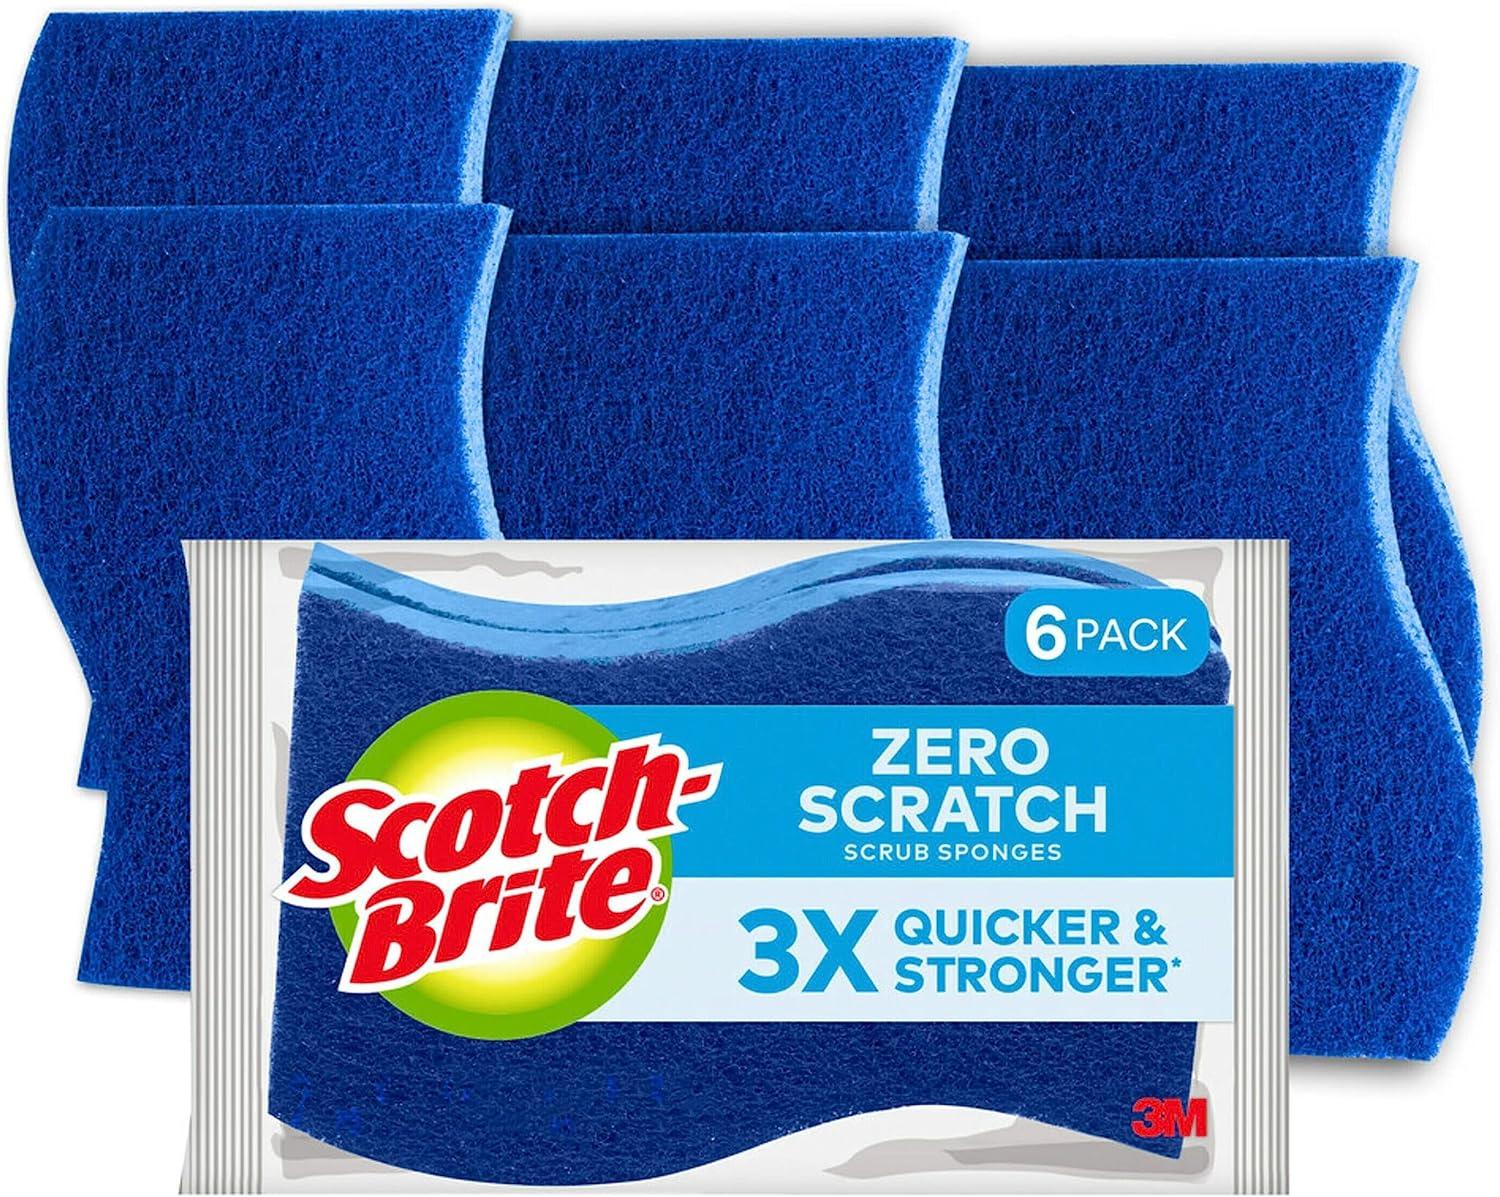 Scotch-Brite Non-Scratch Scrub Sponges 6 Pack for $4.75 Shipped